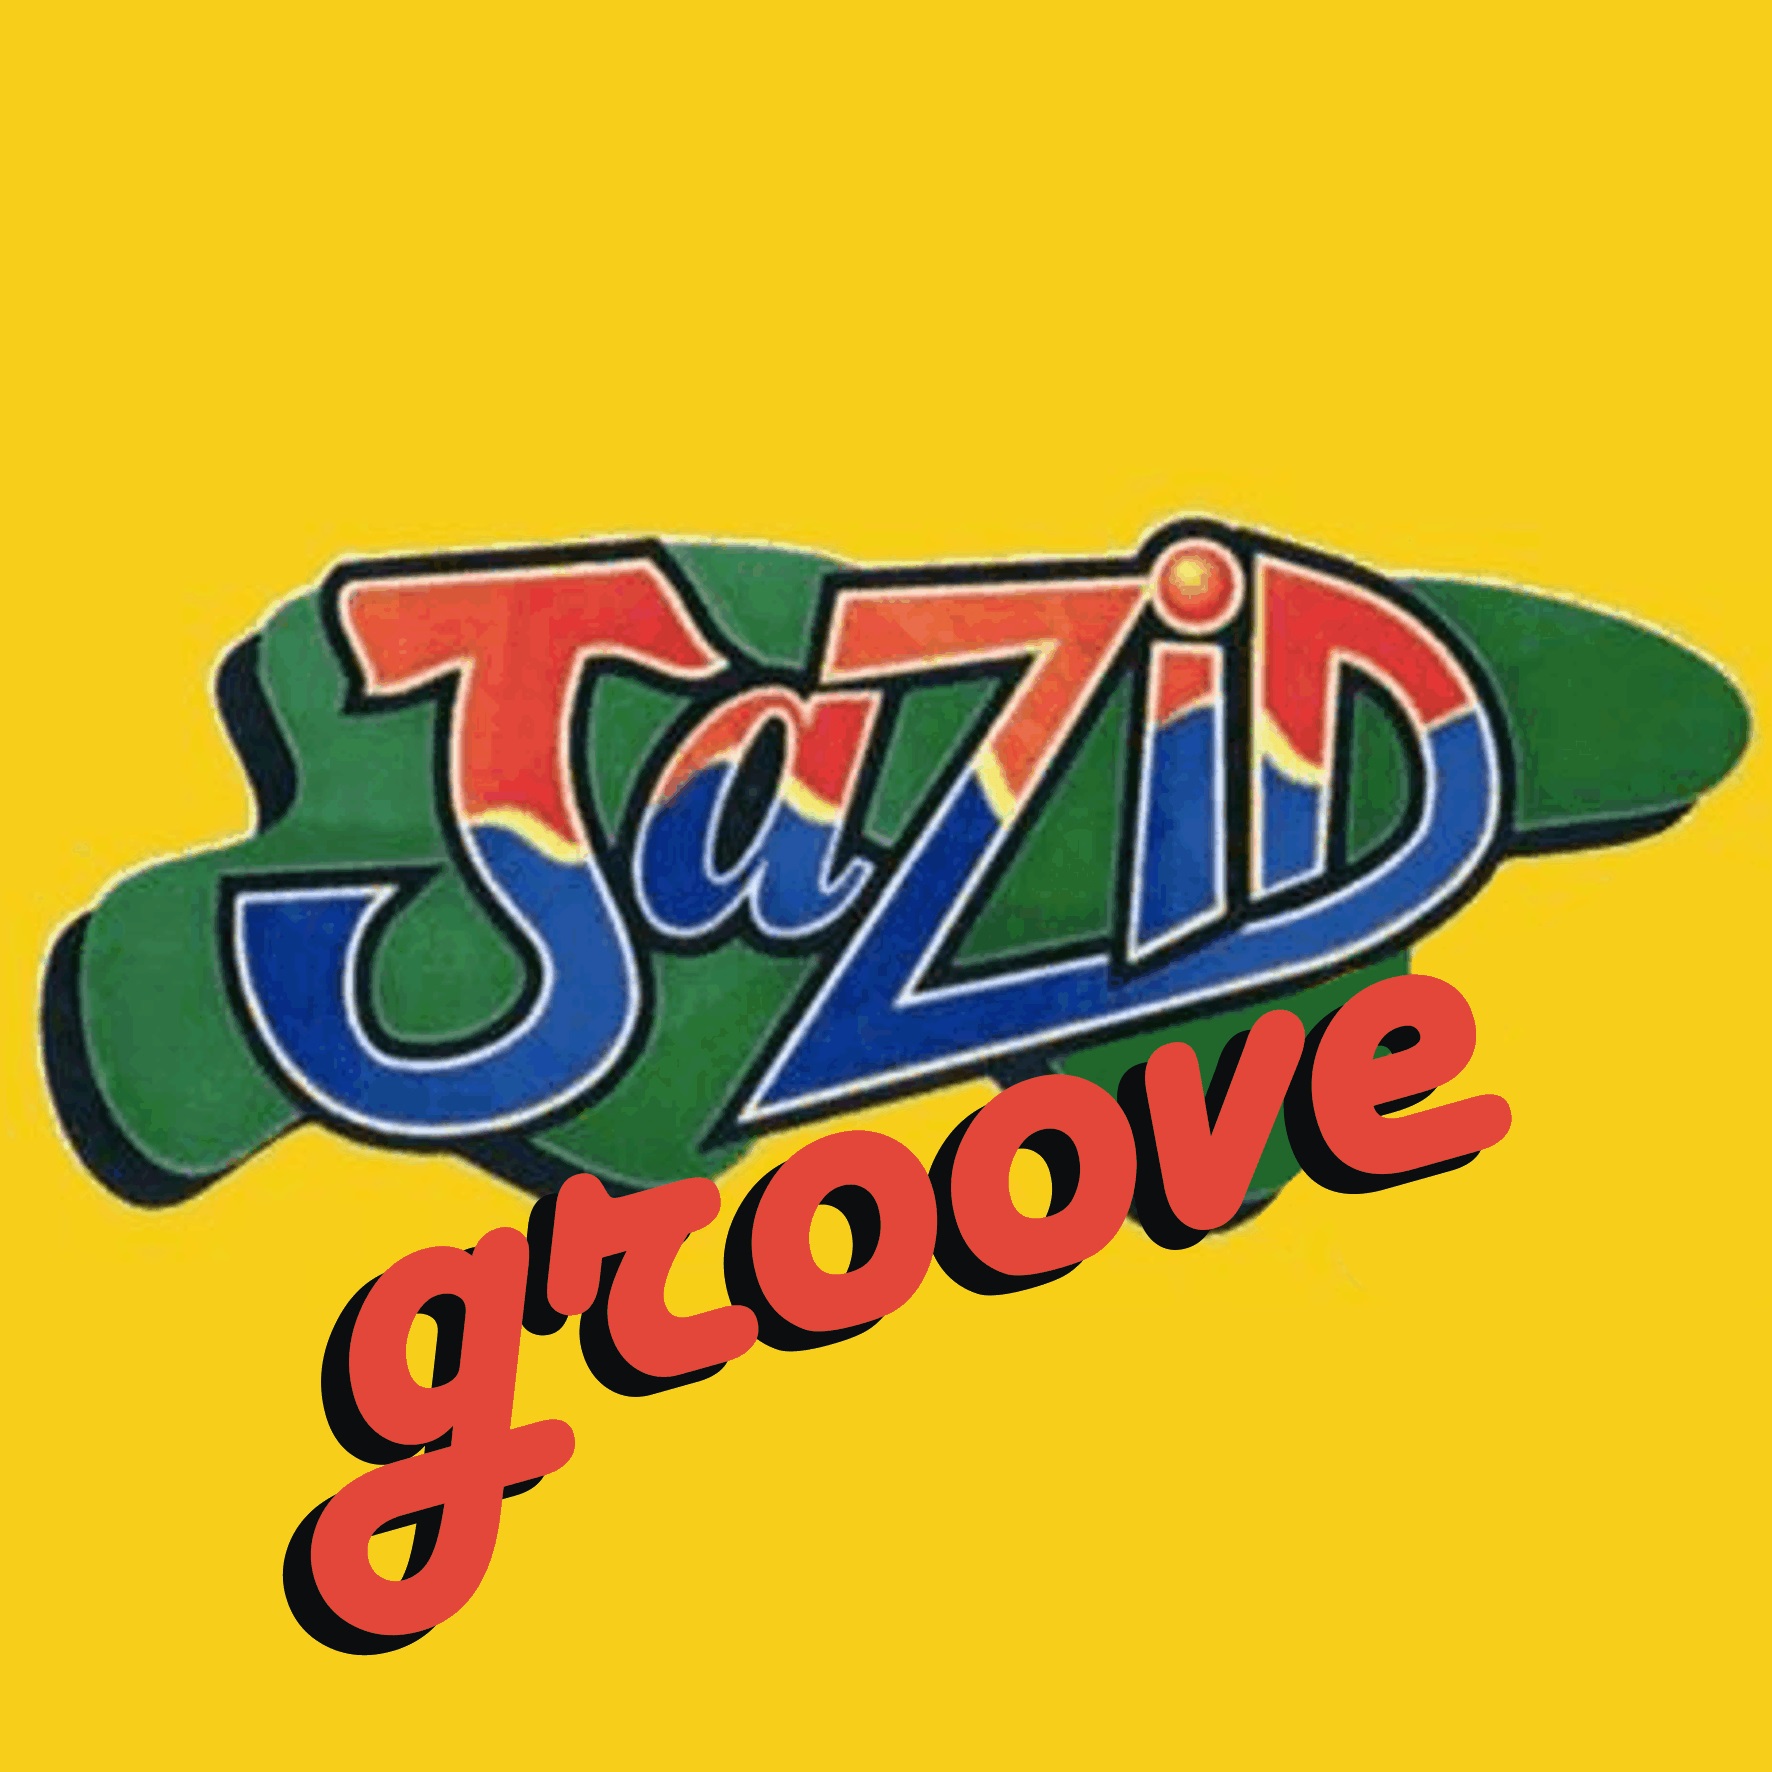 Jazid Groove 44